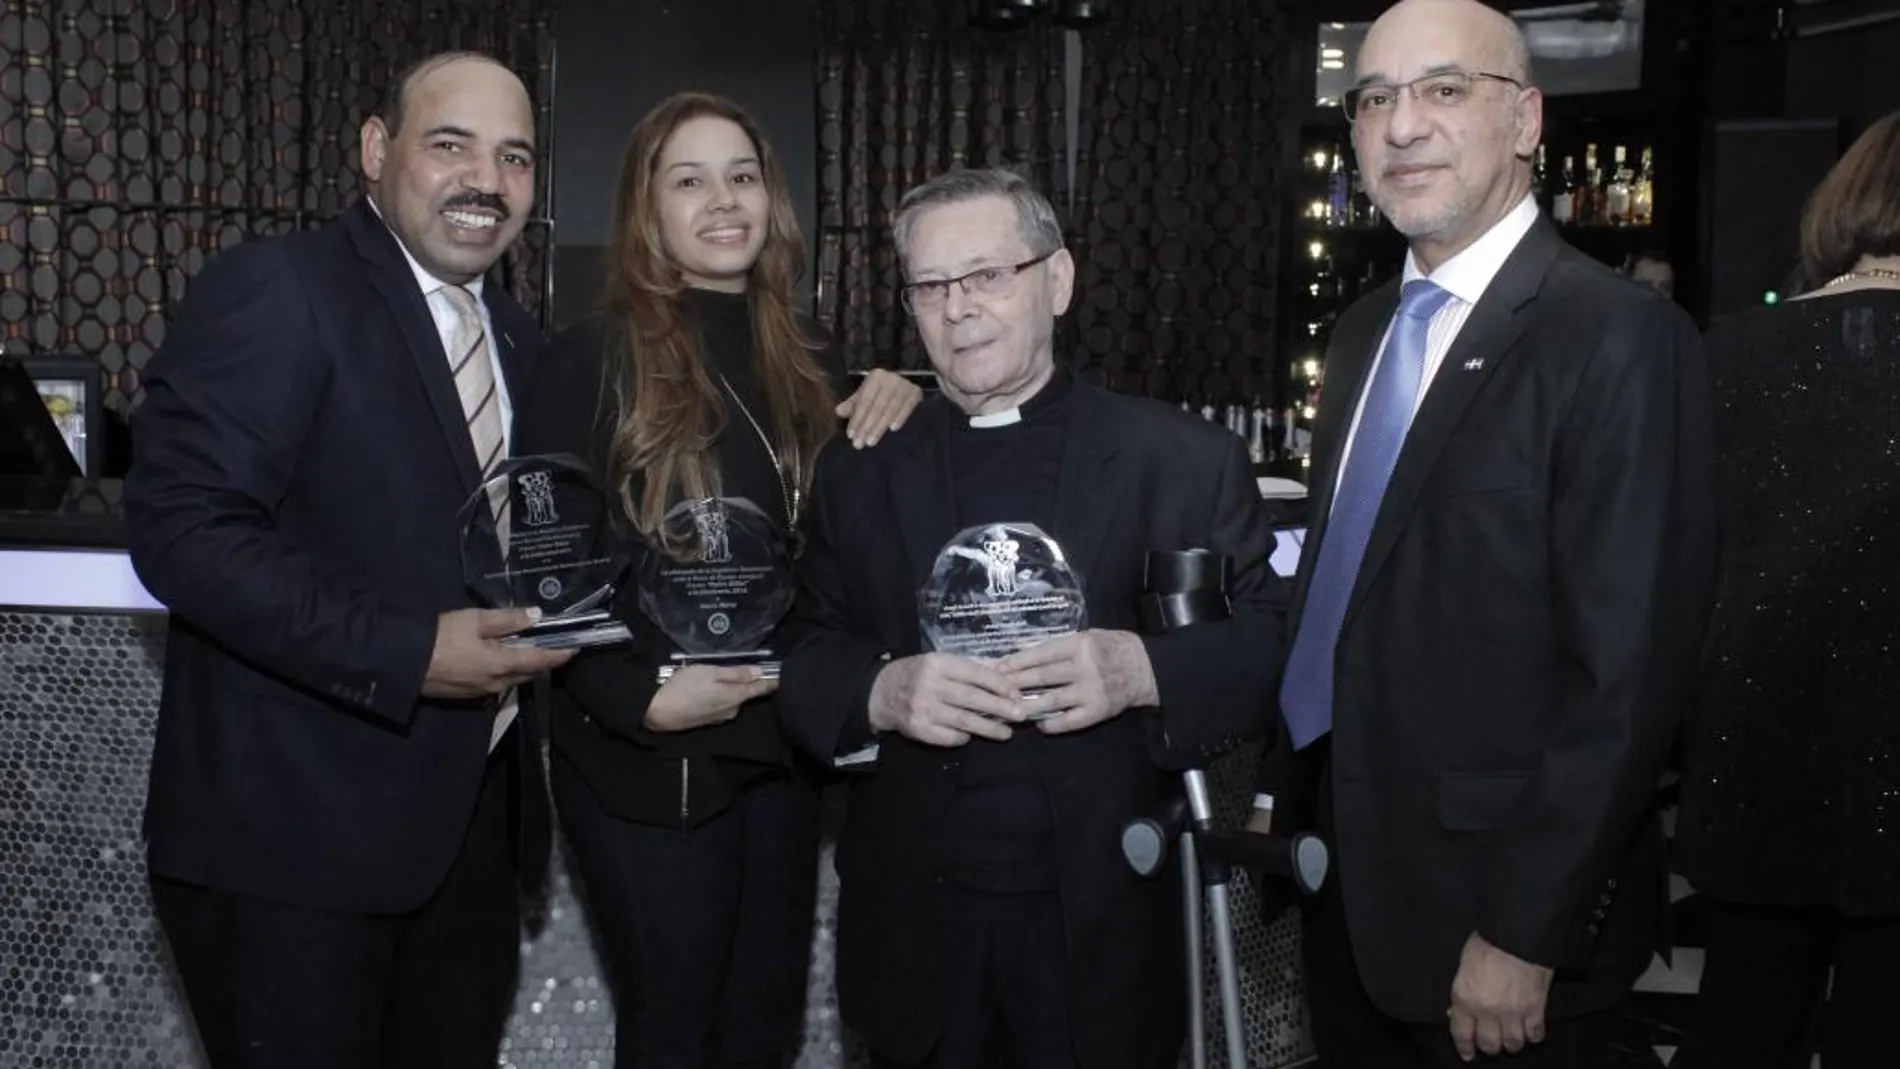 De dcha. a izda. El embajador Aníbal de Castro, el Padre Daniel Guerra, María Marte y Julio César Vargas, con sus respectivos Premios.